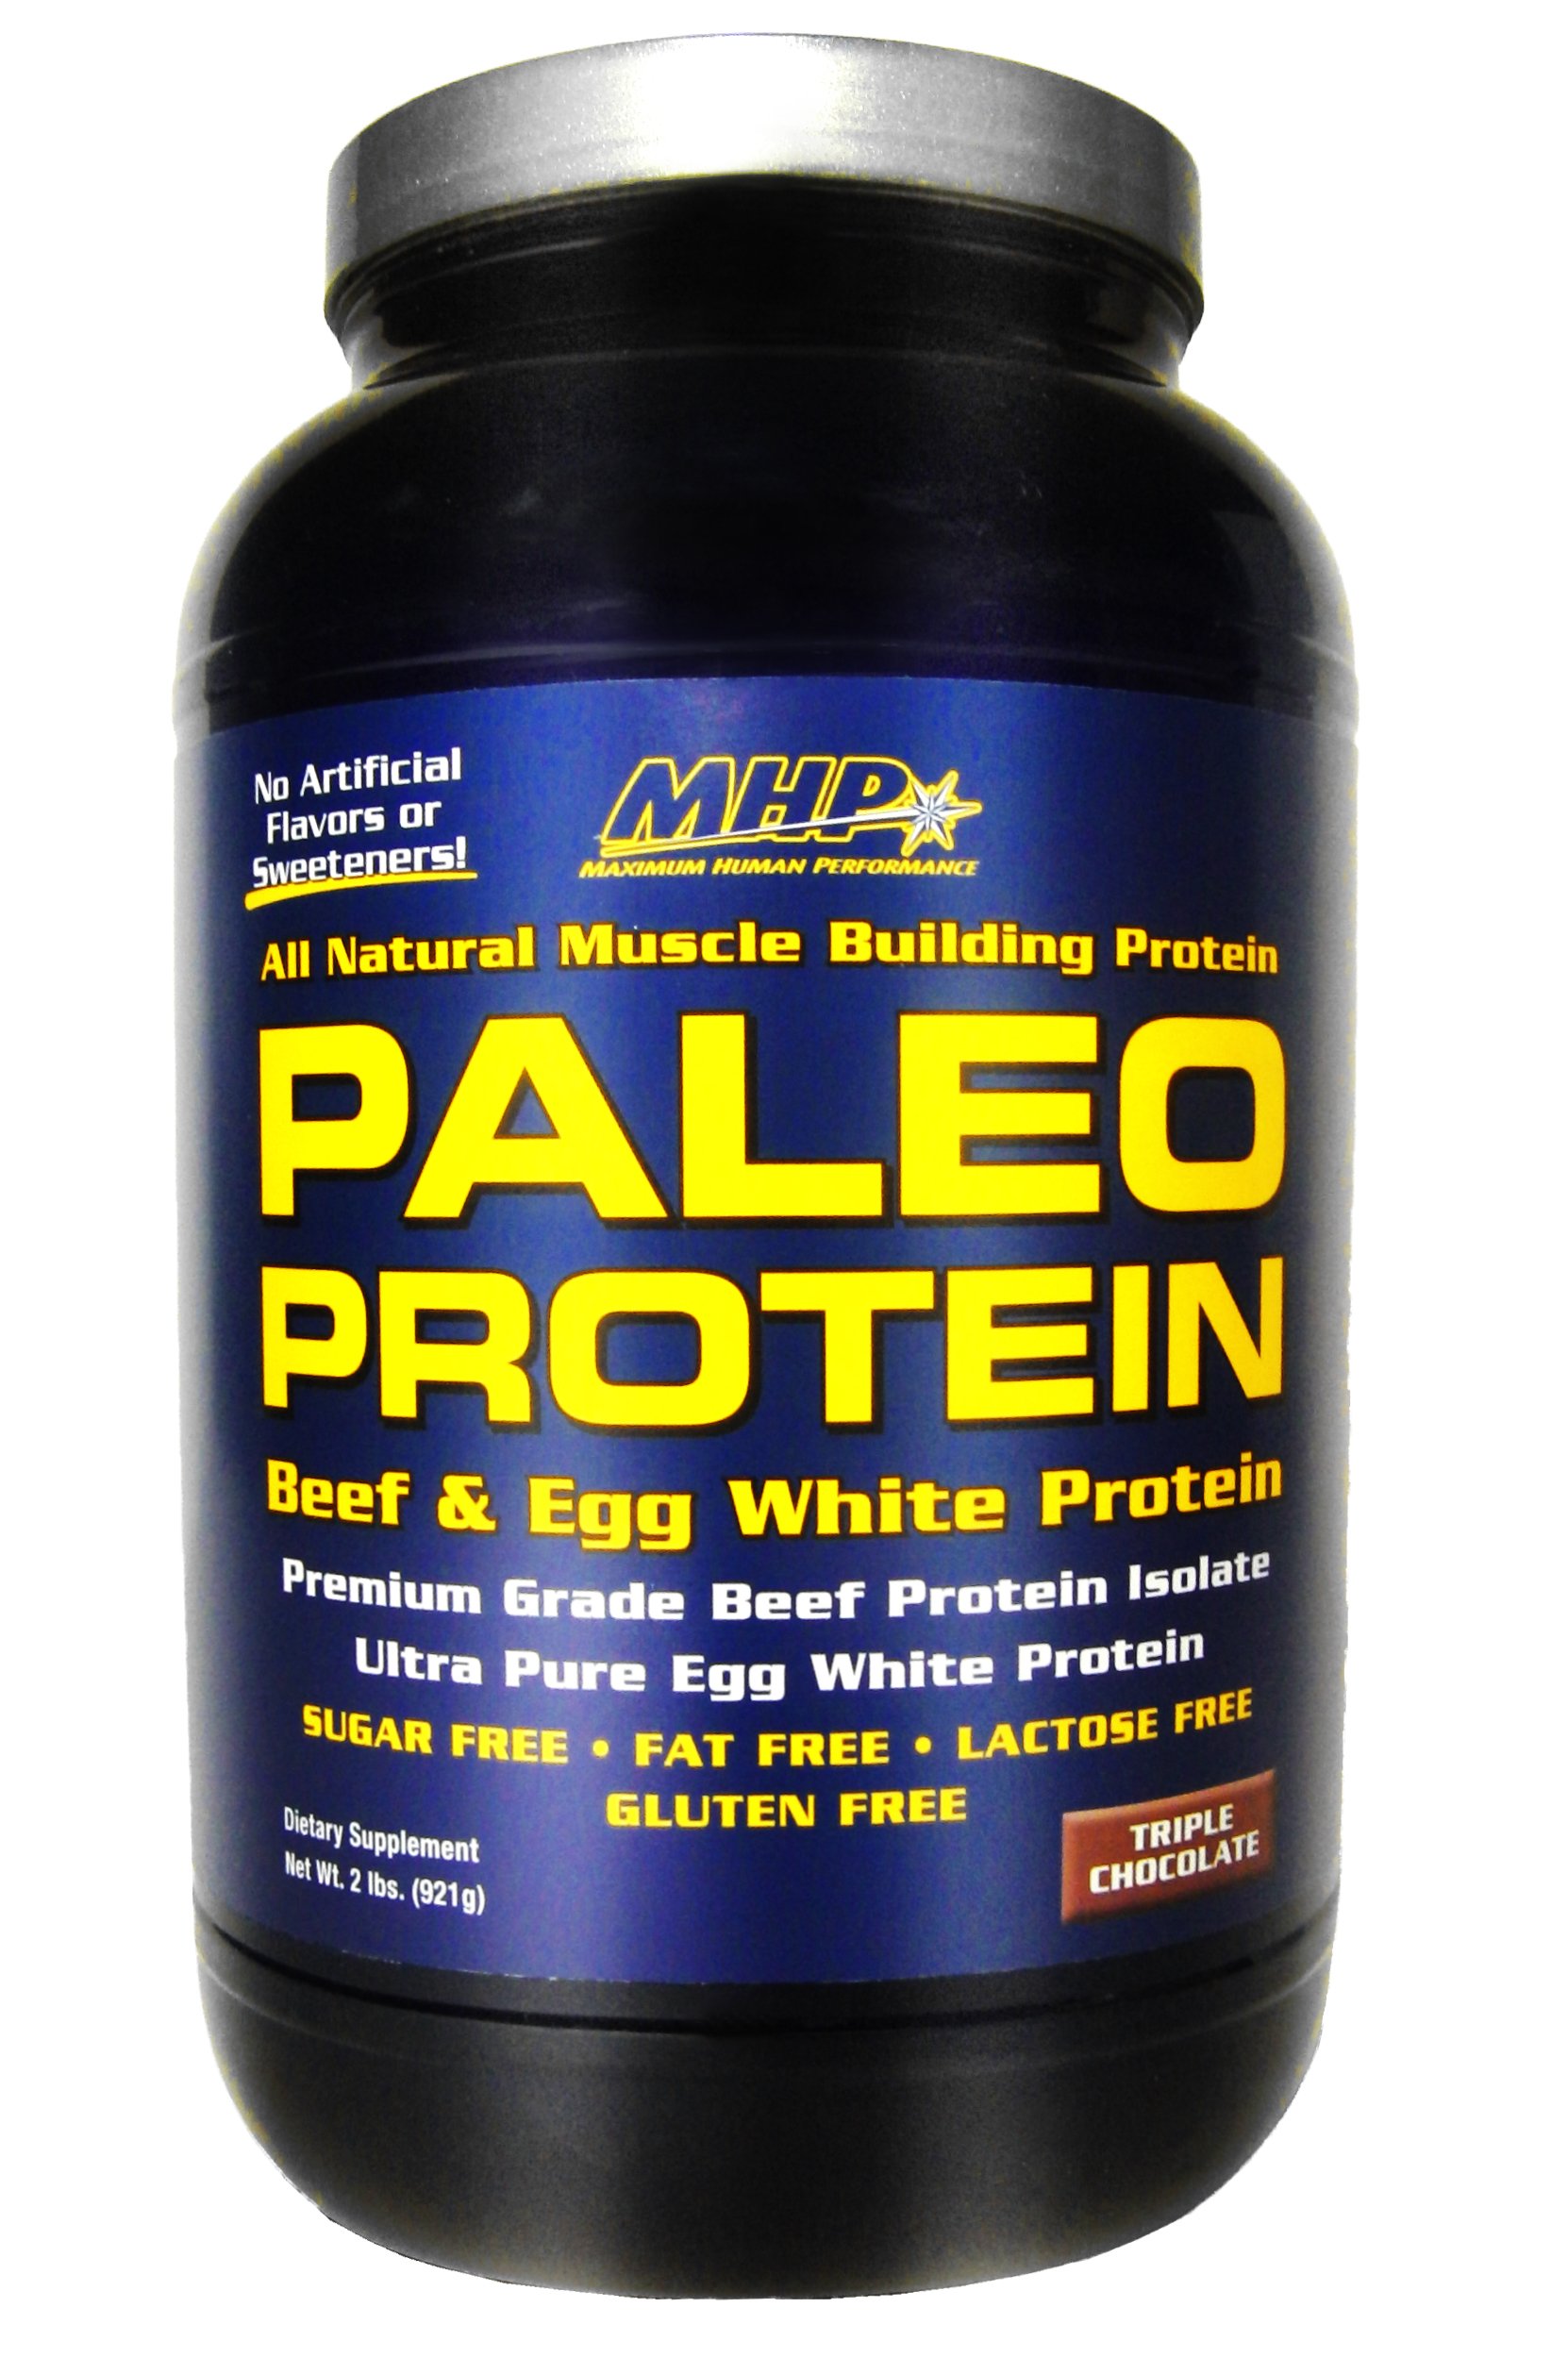 Paleo Protein, 921 g, MHP. Protein Blend. 